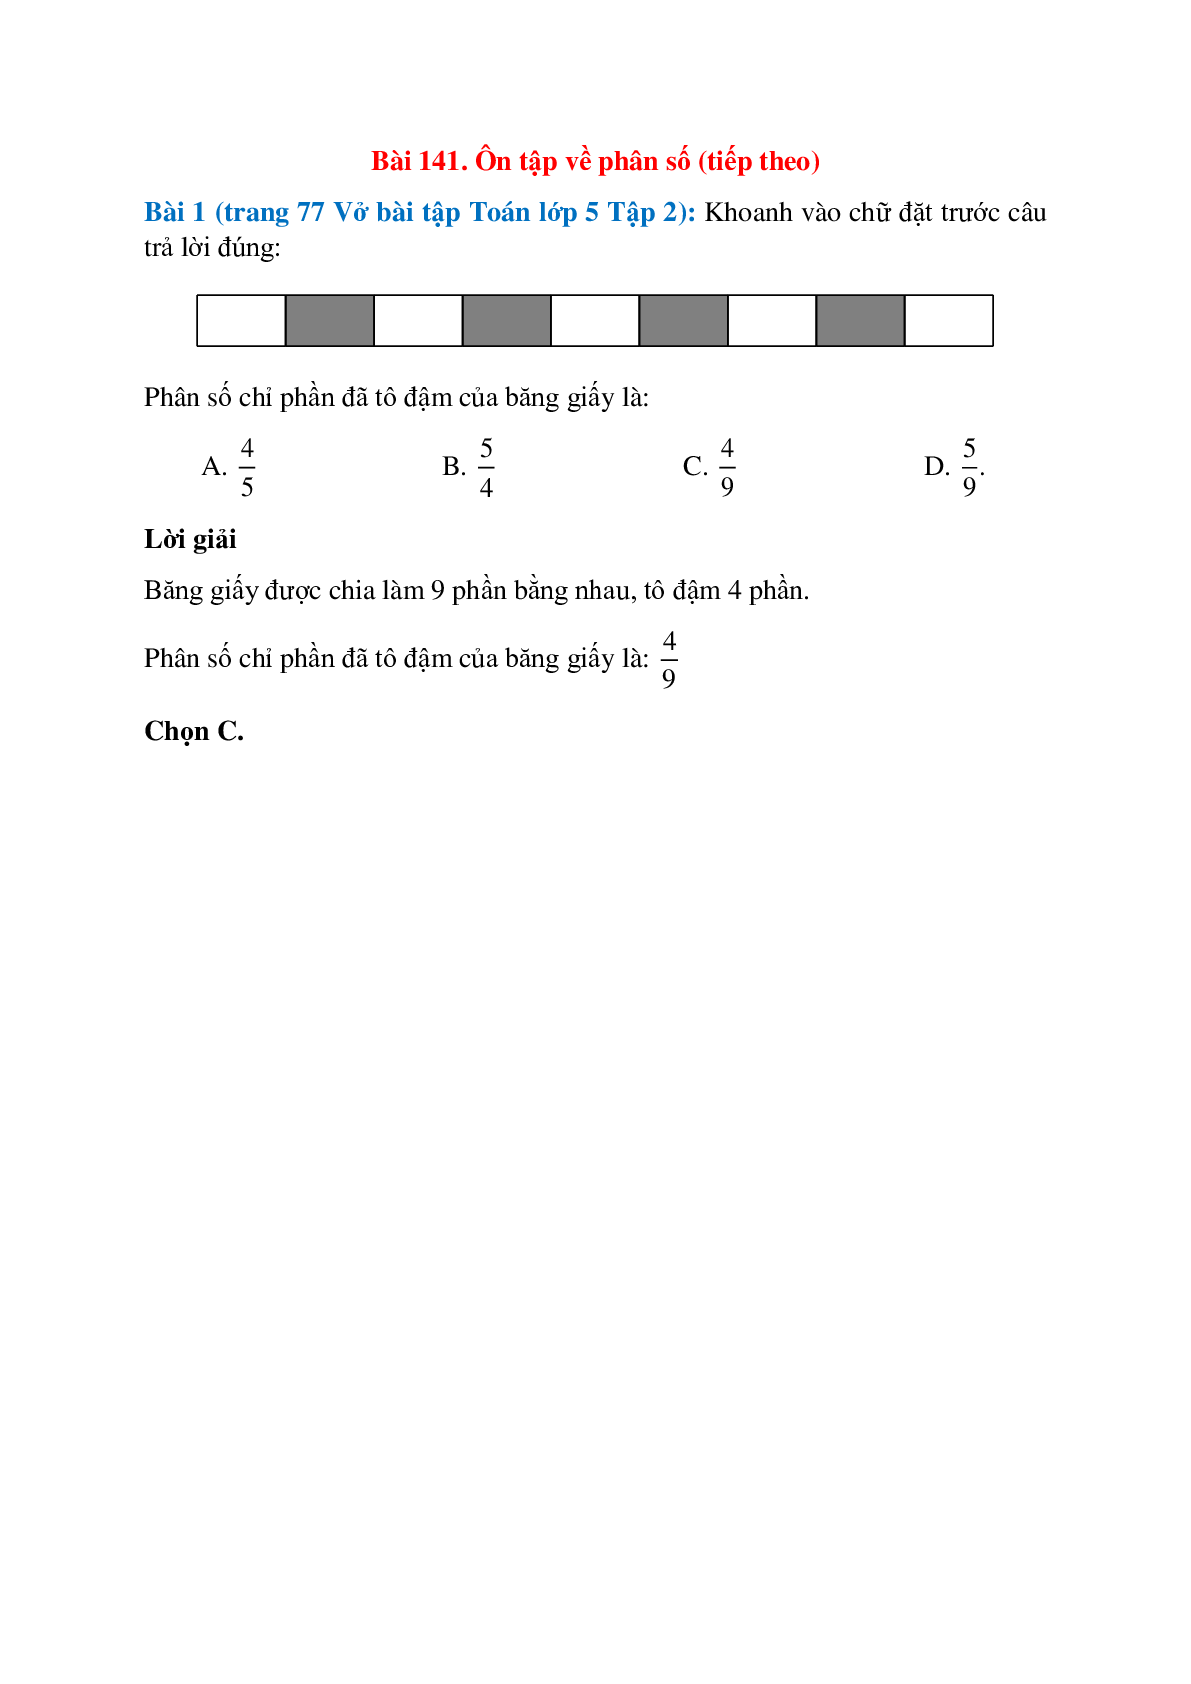 Khoanh vào chữ đặt trước câu trả lời đúng: Phân số chỉ phần đã tô đậm của băng giấy (trang 1)